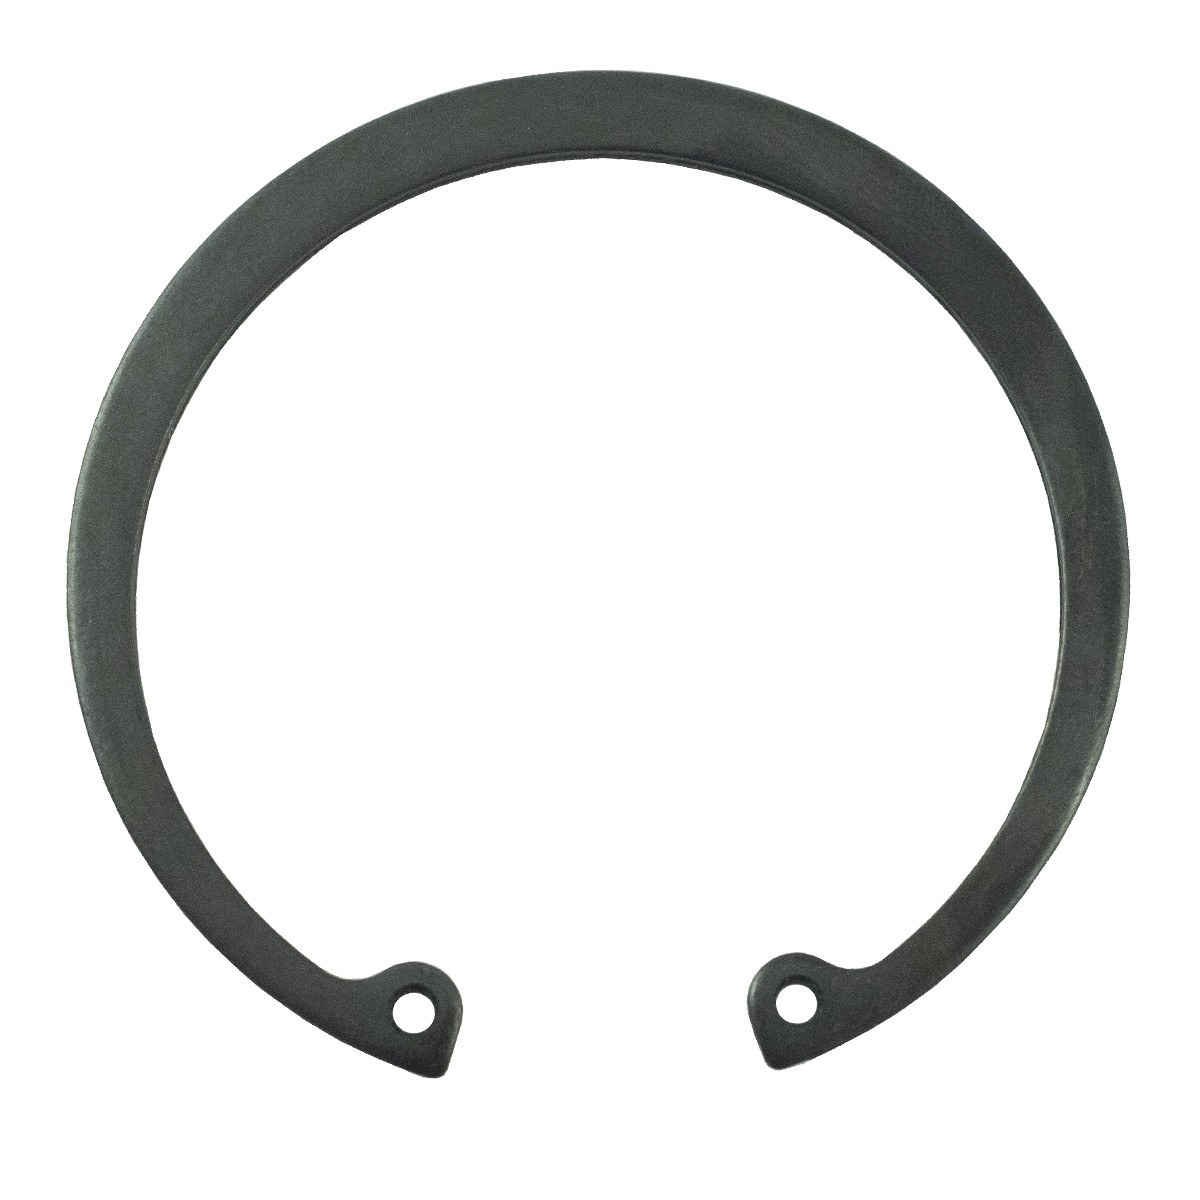 Seger ring Ø 72 / LS MT1.25 / LS MT3.35 / LS MT3.40 / LS MT3.50 / LS MT3.60 / S811072001 / 40029301